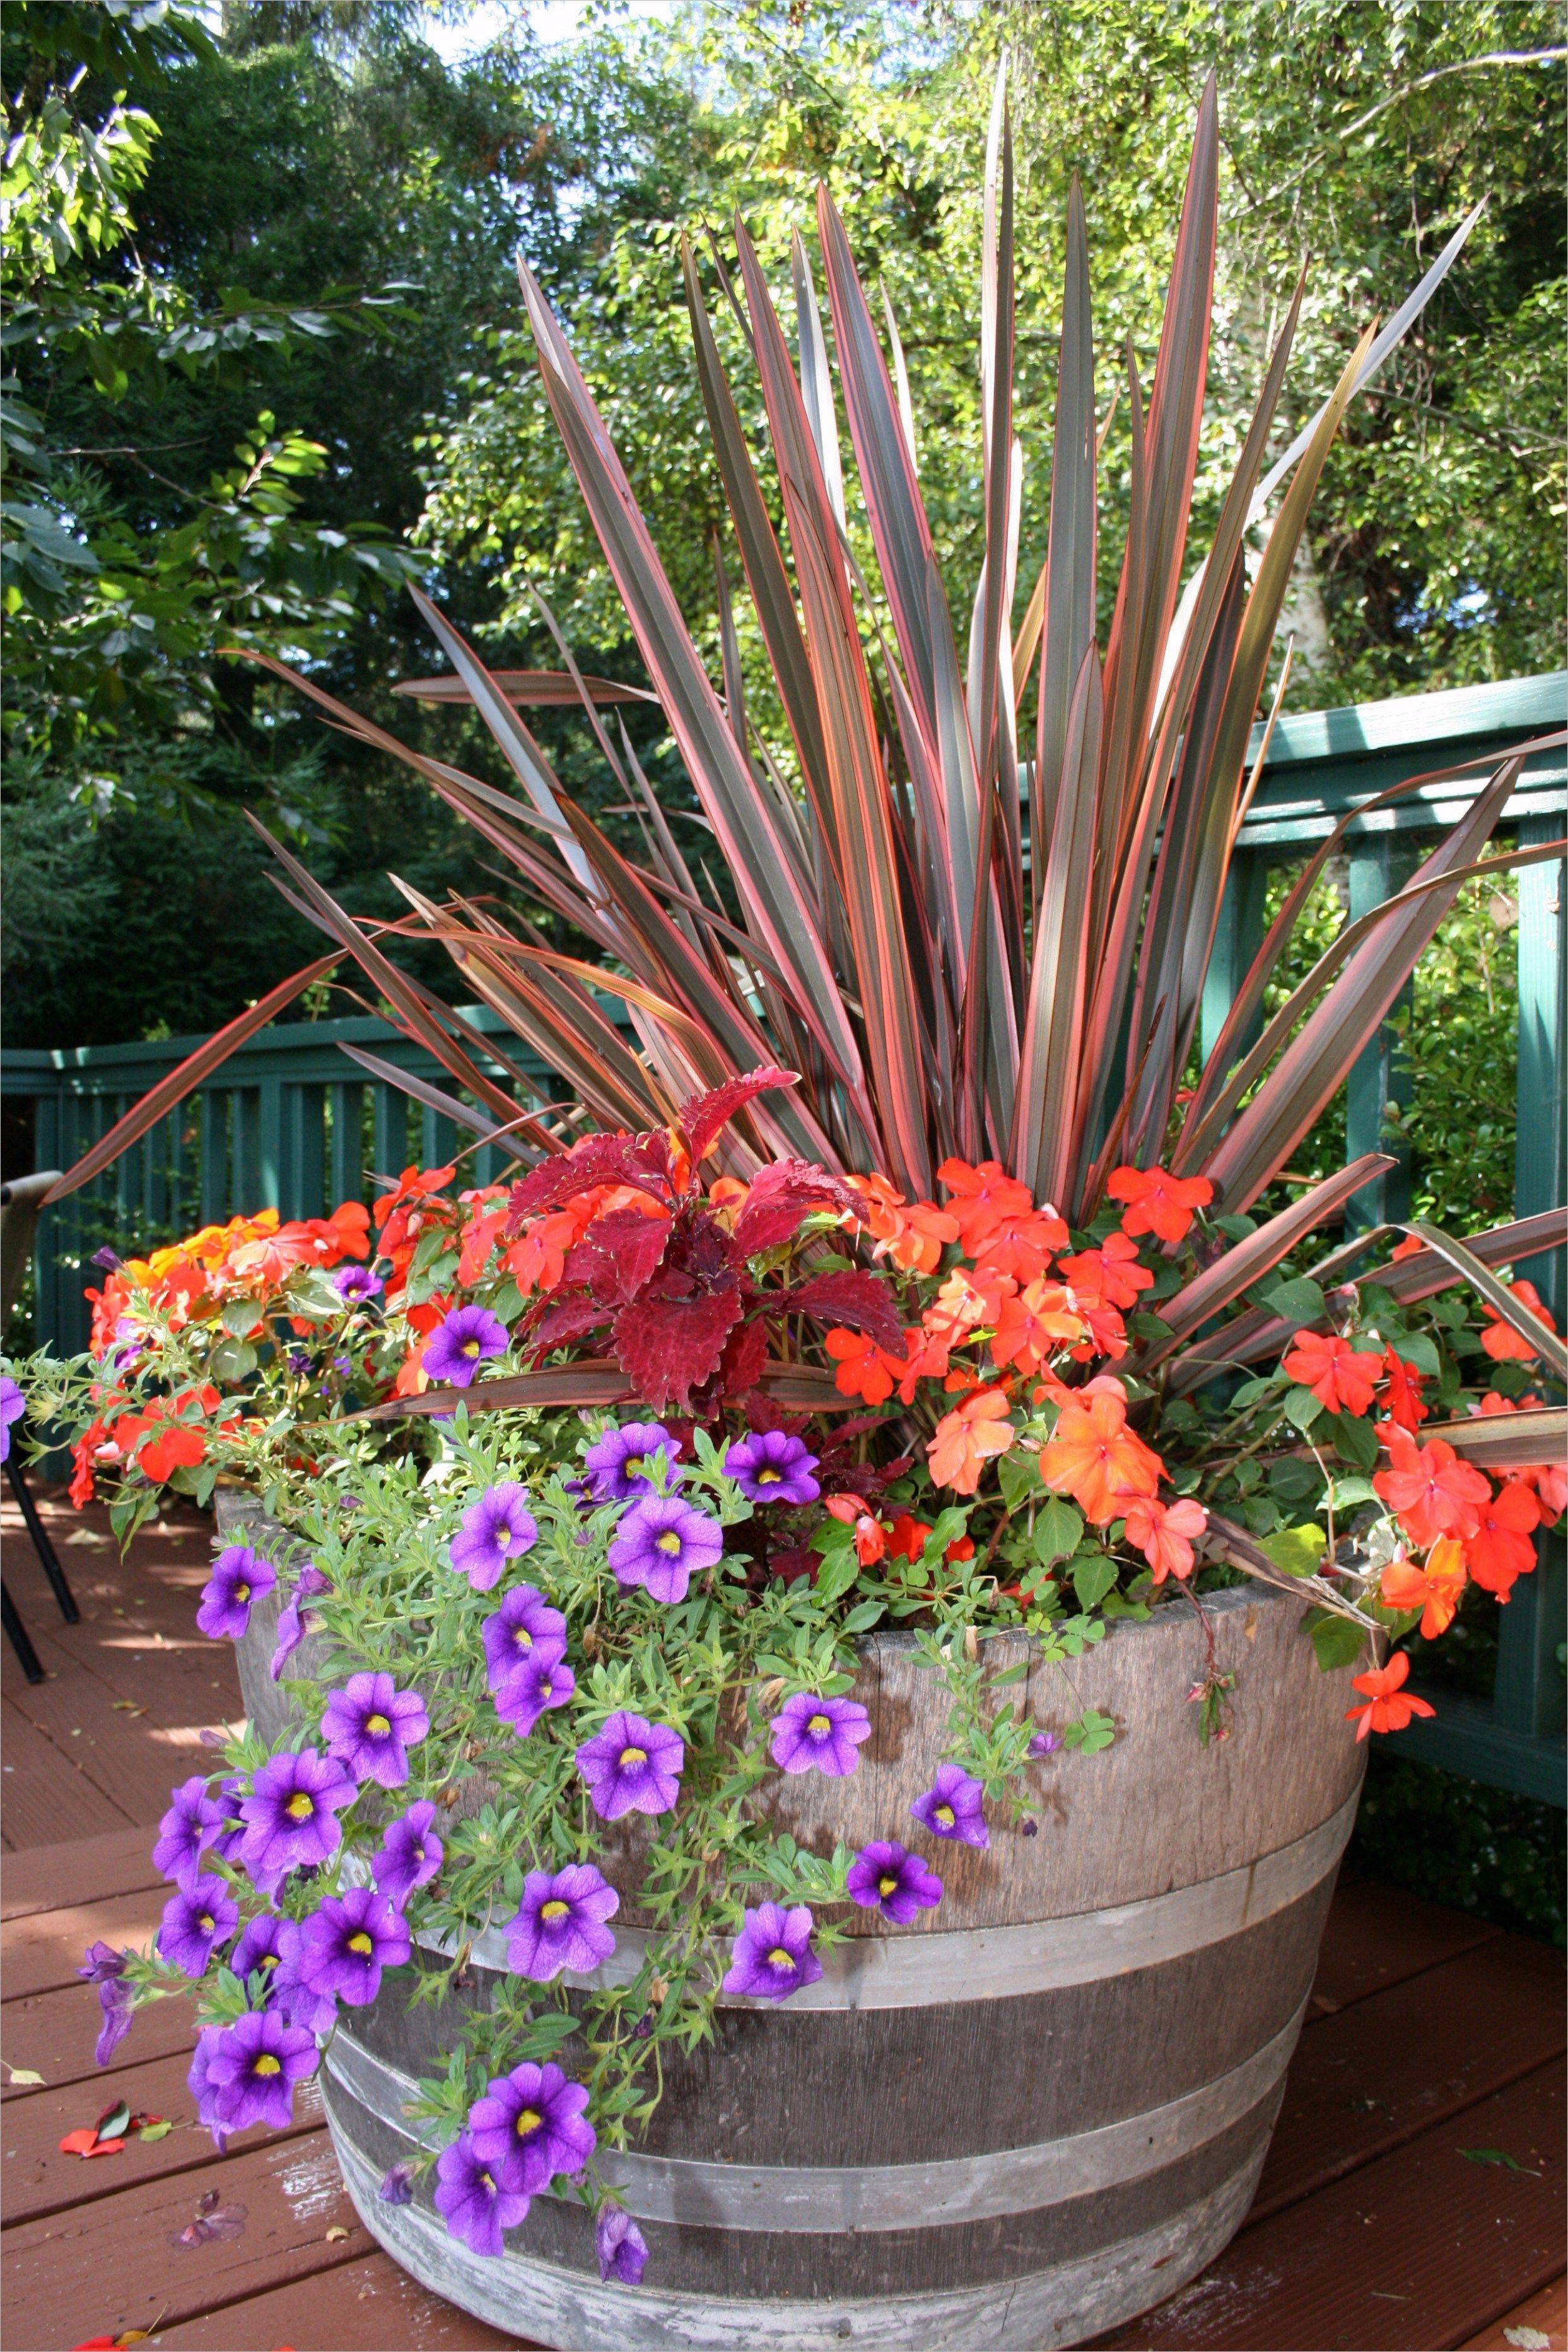 Unusual Colorful Shade Garden Pots Ideas